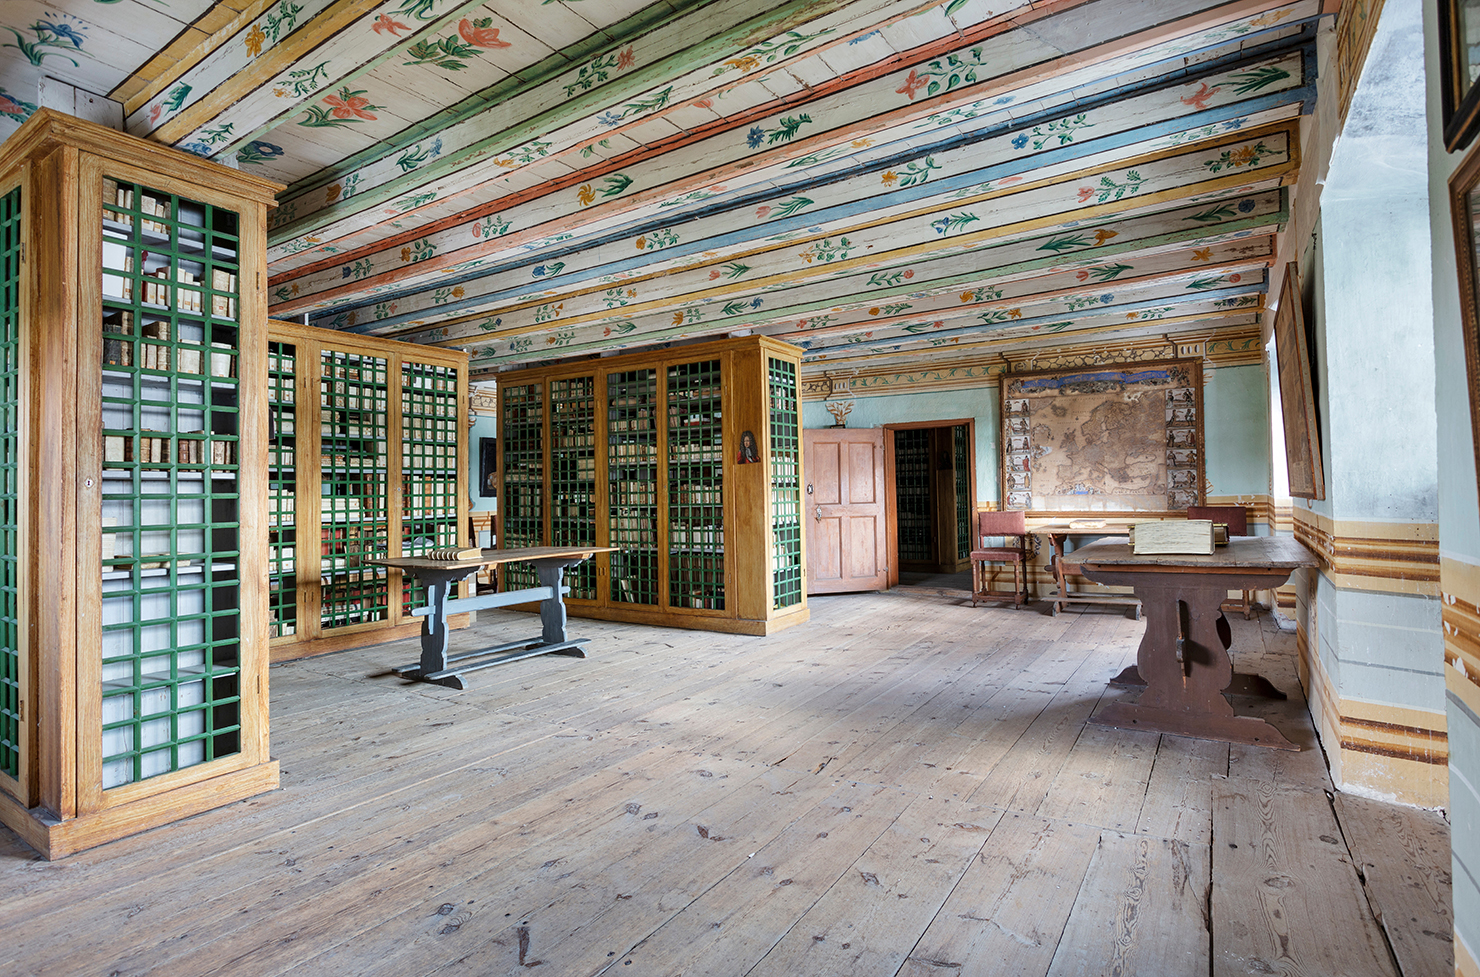 Ett rum med bokhyllor som har gröna gallerdörrar. Väggar och tak är målade.